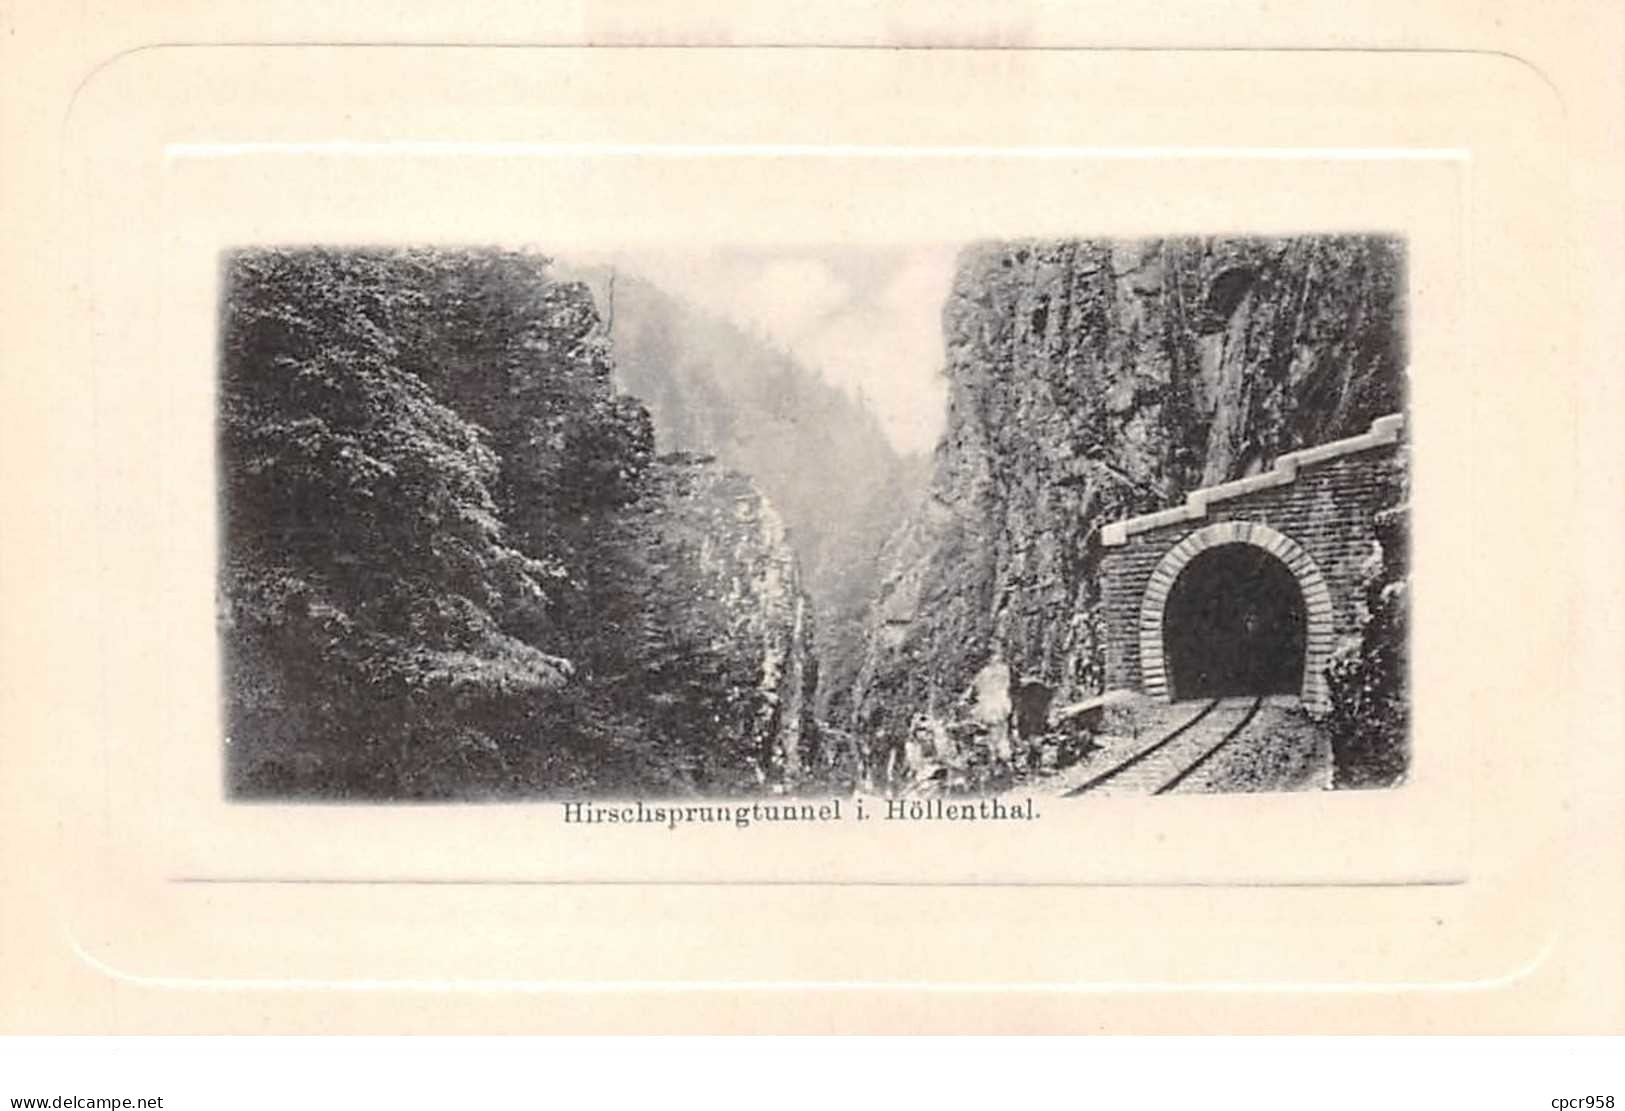 Allemagne - N°61113 - Hirschsprungtunnel I. HïLENTHAL - Höllental